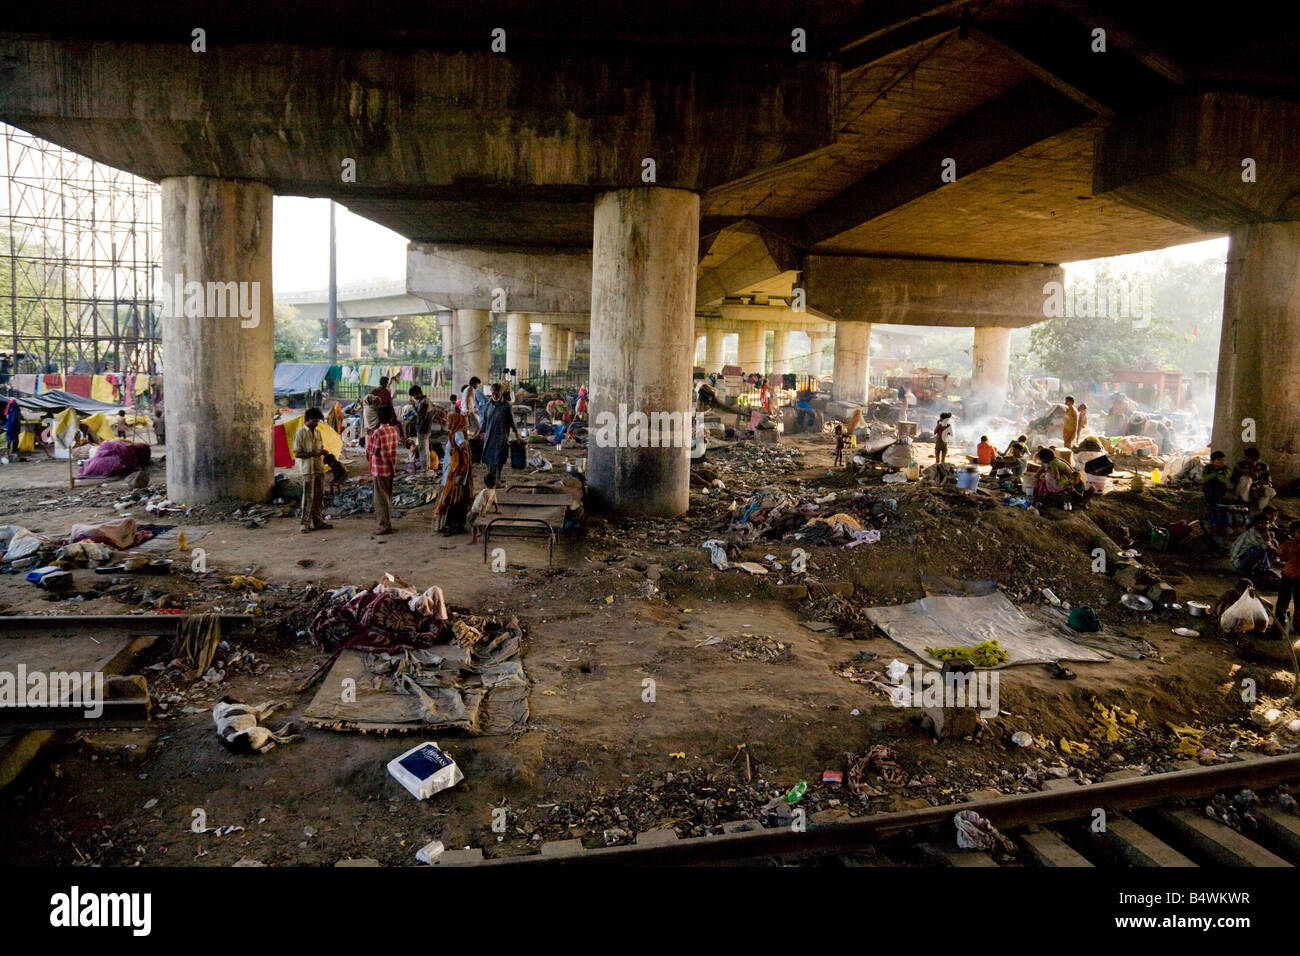 crowds-of-people-living-in-slums-under-the-bridge-by-the-delhi-to-B4WKWR.jpg